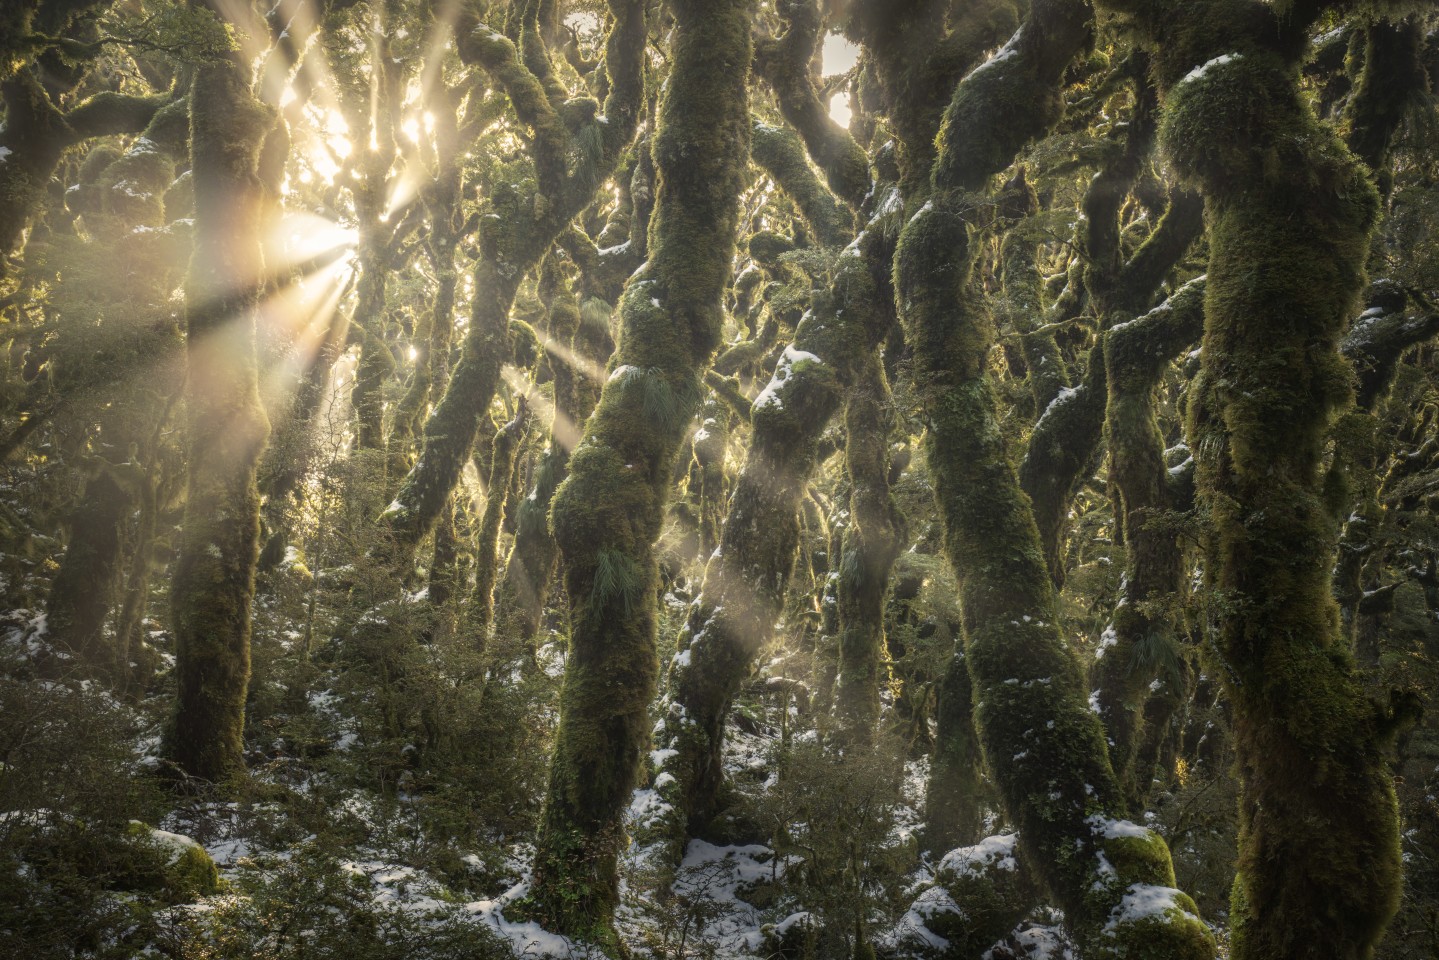 Финалист ландшафтной категории: "Заколдованный лес". Потоки света через покрытый мхом буковый лес на вершине Тараруас в Новой Зеландии. Фото: Michael McGee